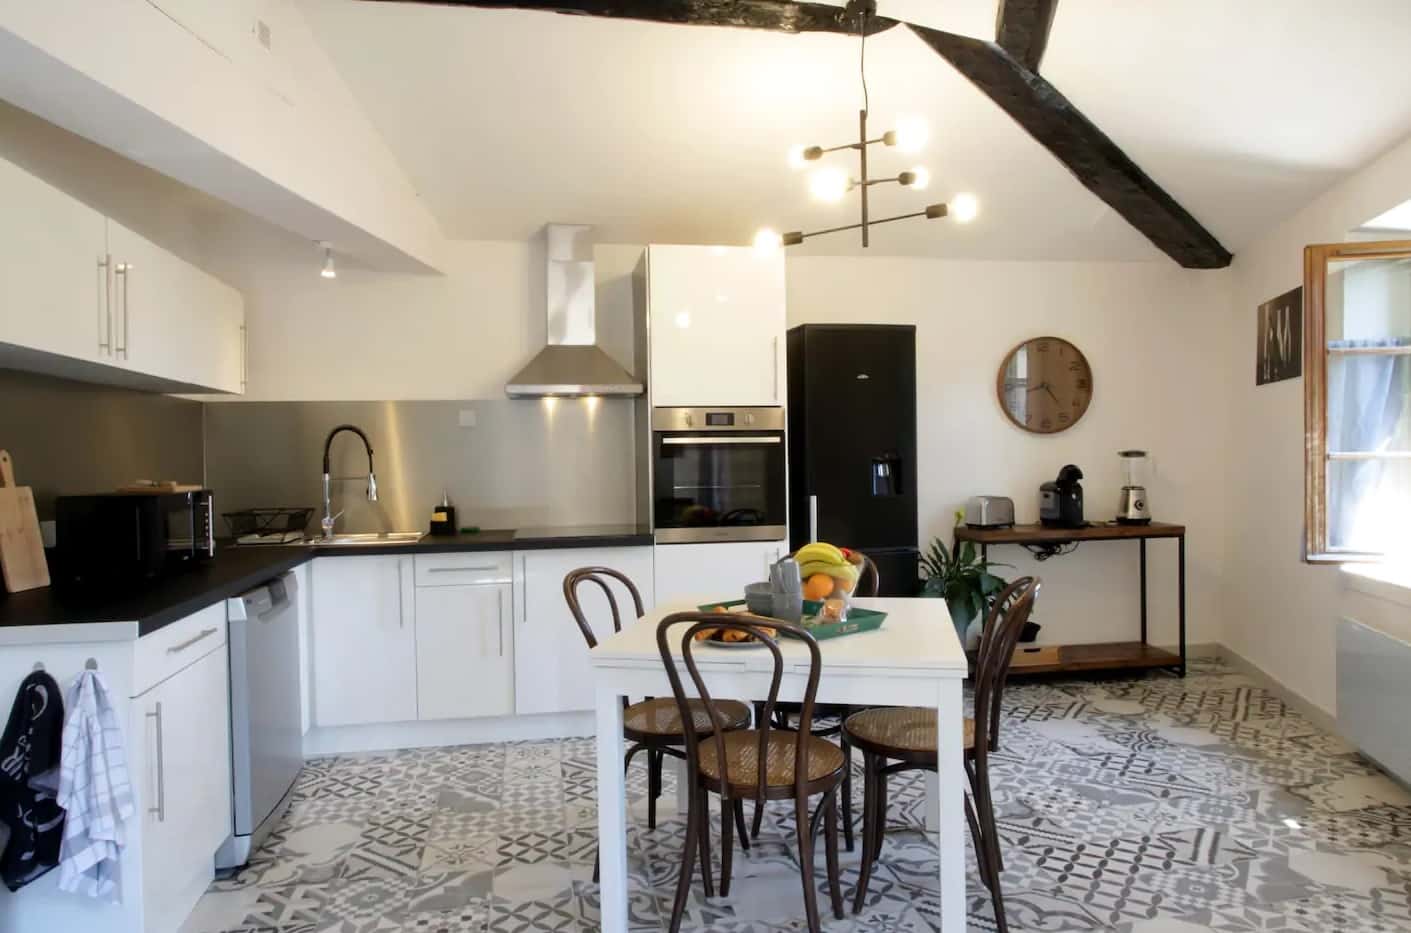  Airbnb  Carcassonne les meilleurs appartements Airbnb   